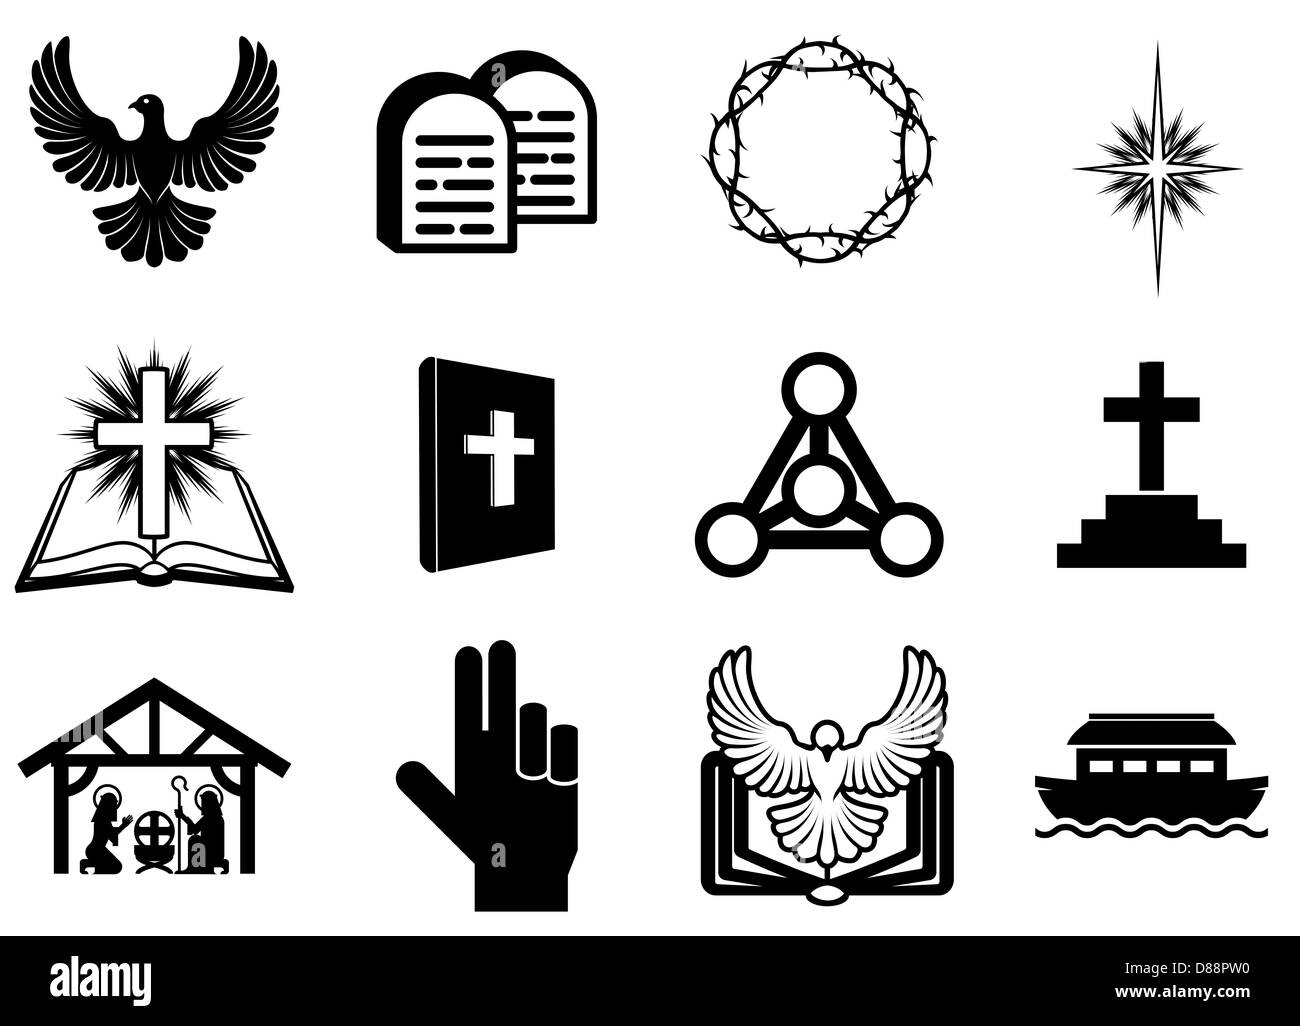 Ensemble d'icônes religieuses chrétiennes, signes et symboles Banque D'Images